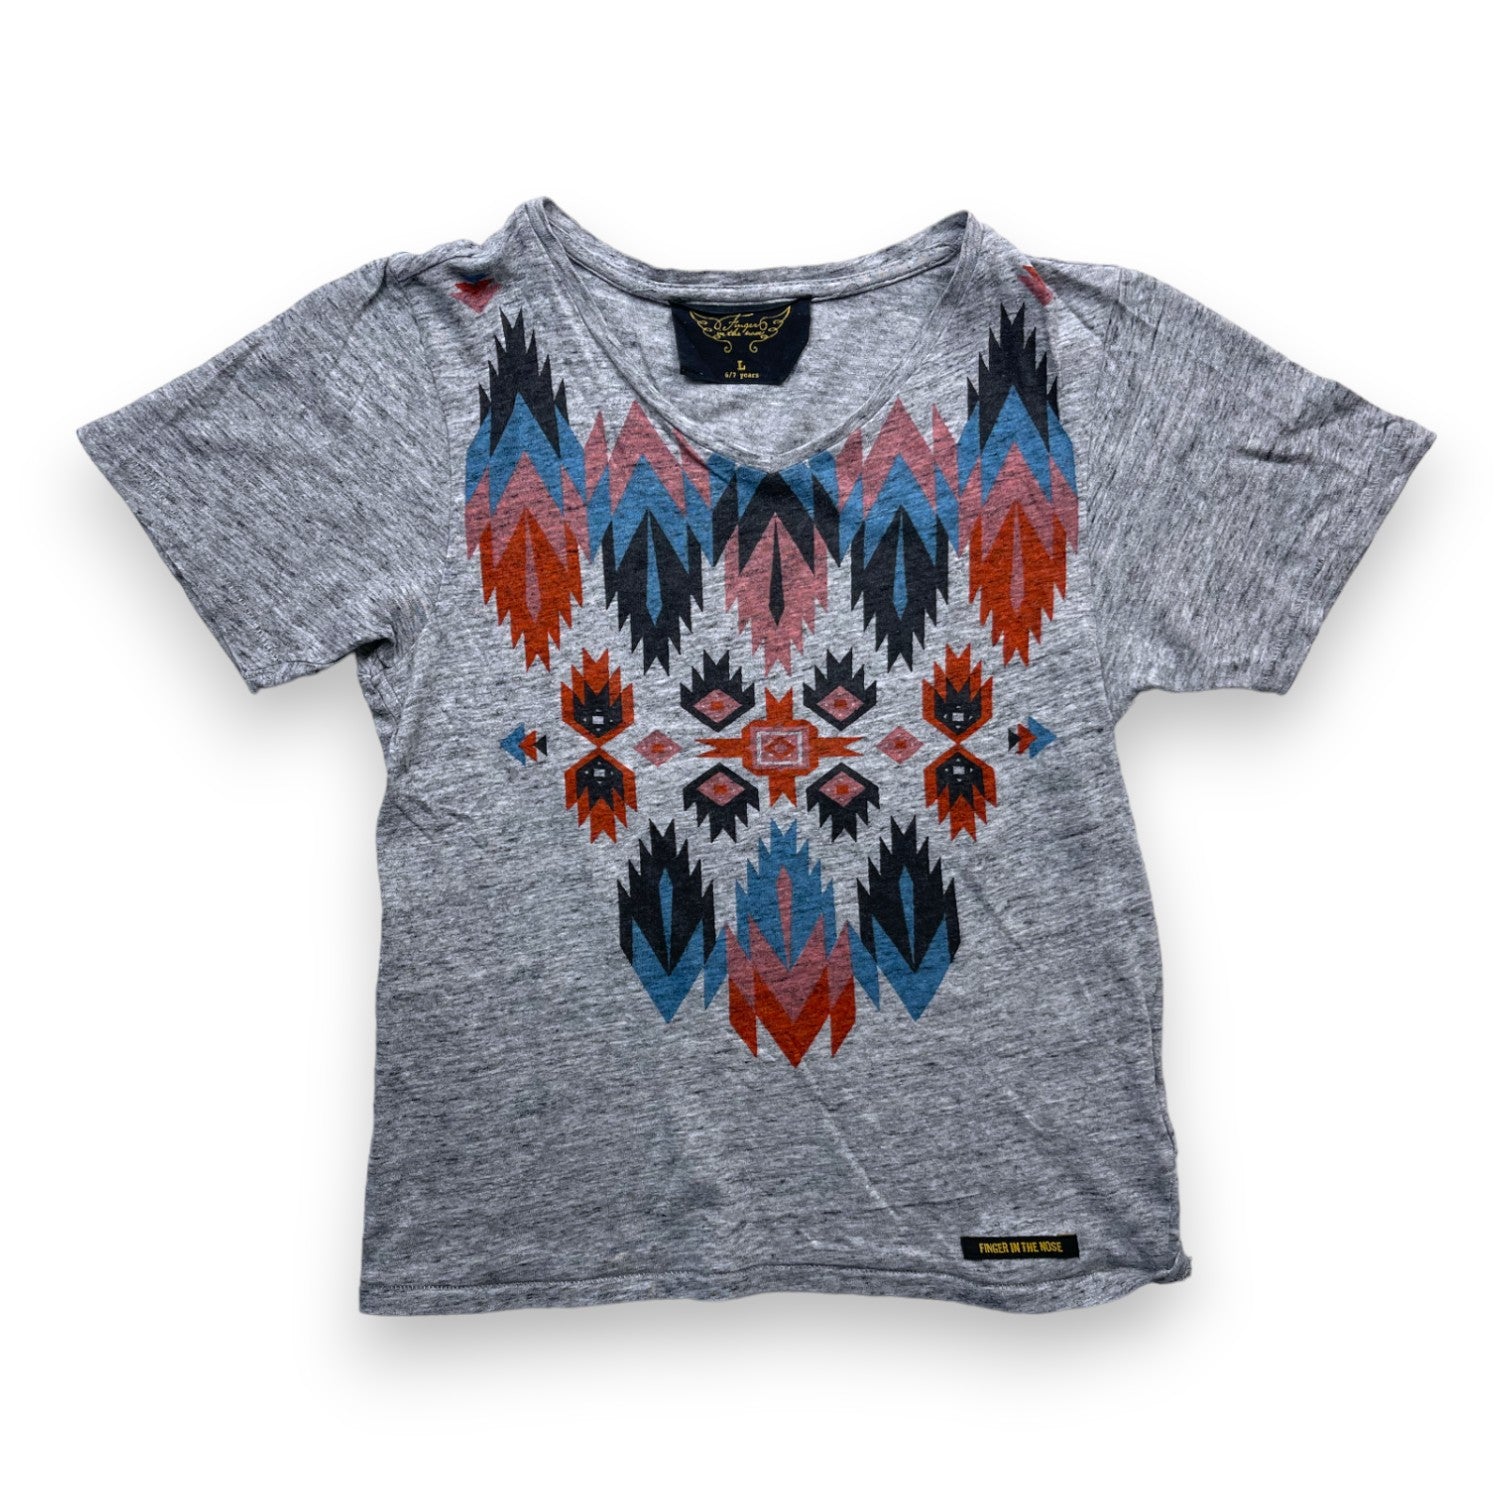 FINGER IN THE NOSE - T shirt manches courtes gris chiné à motifs multicolores - 6/7 ans